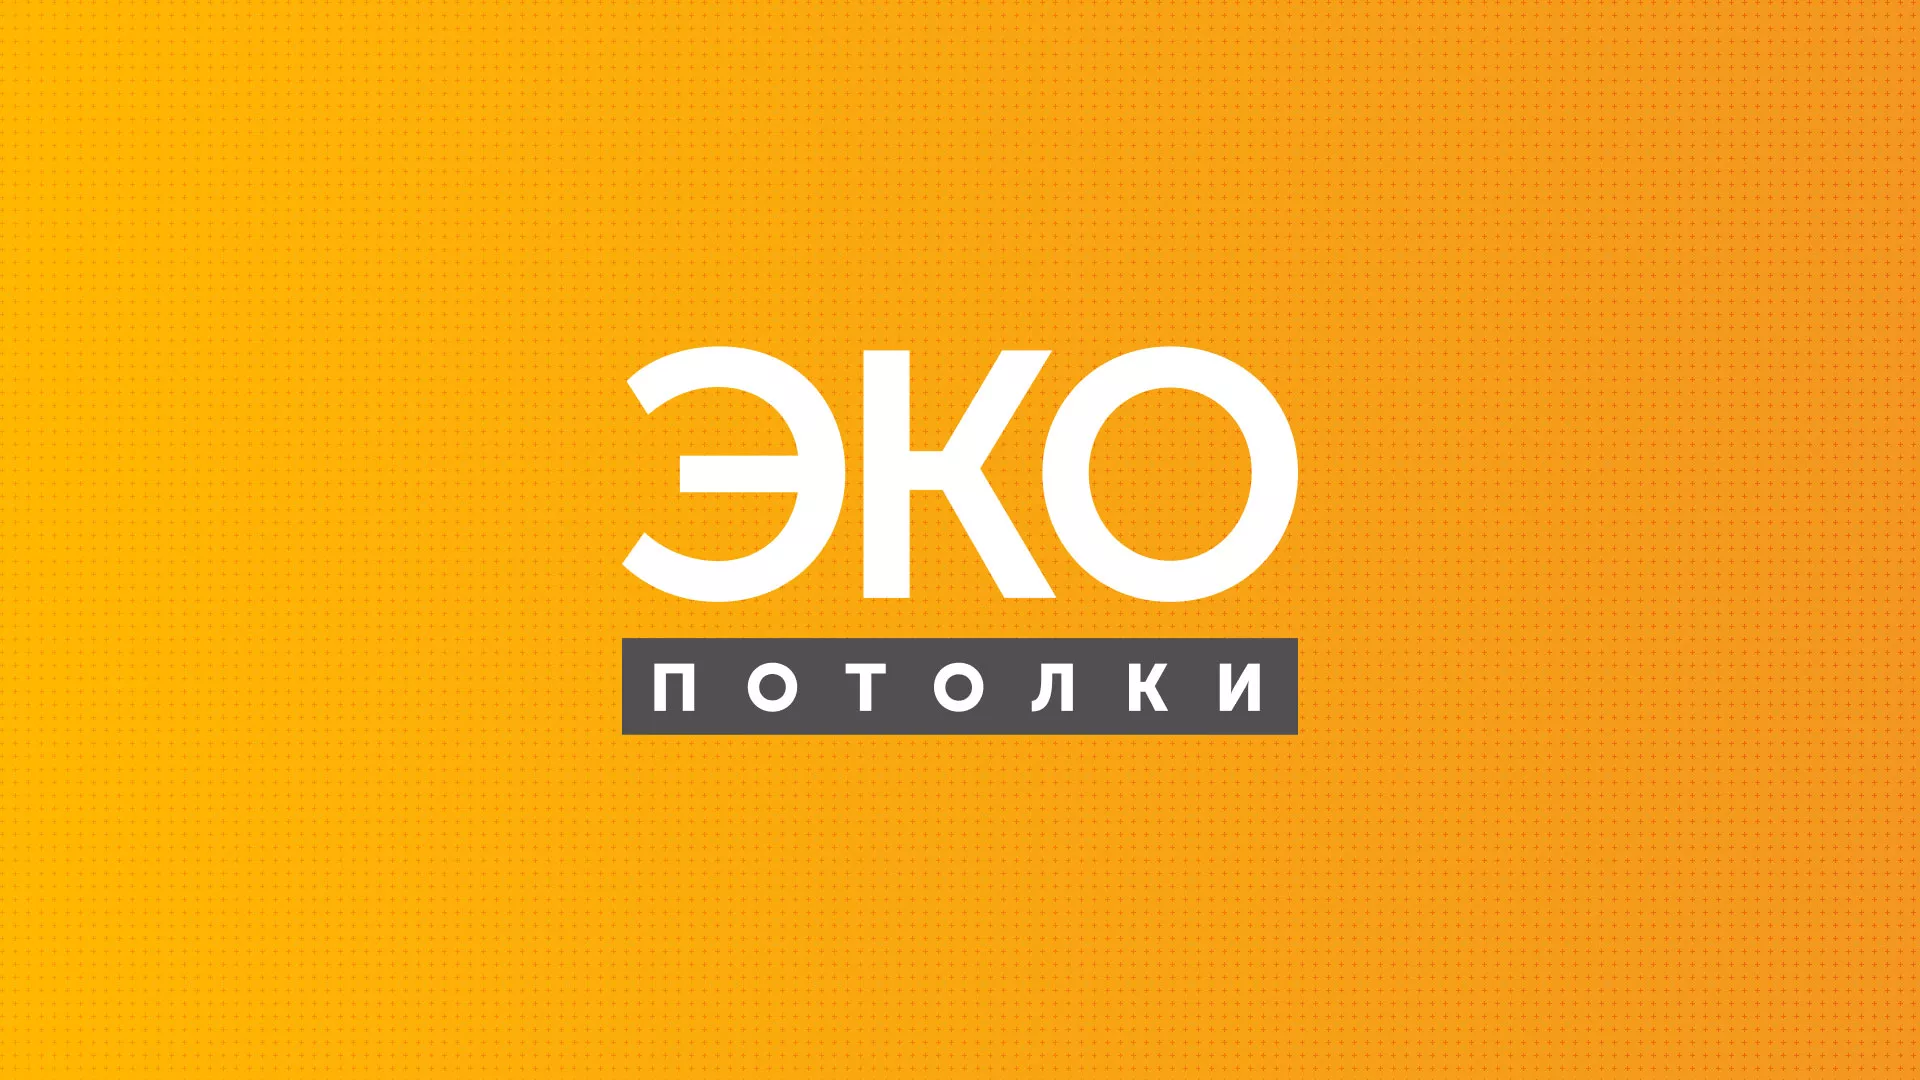 Разработка сайта по натяжным потолкам «Эко Потолки» в Кирове